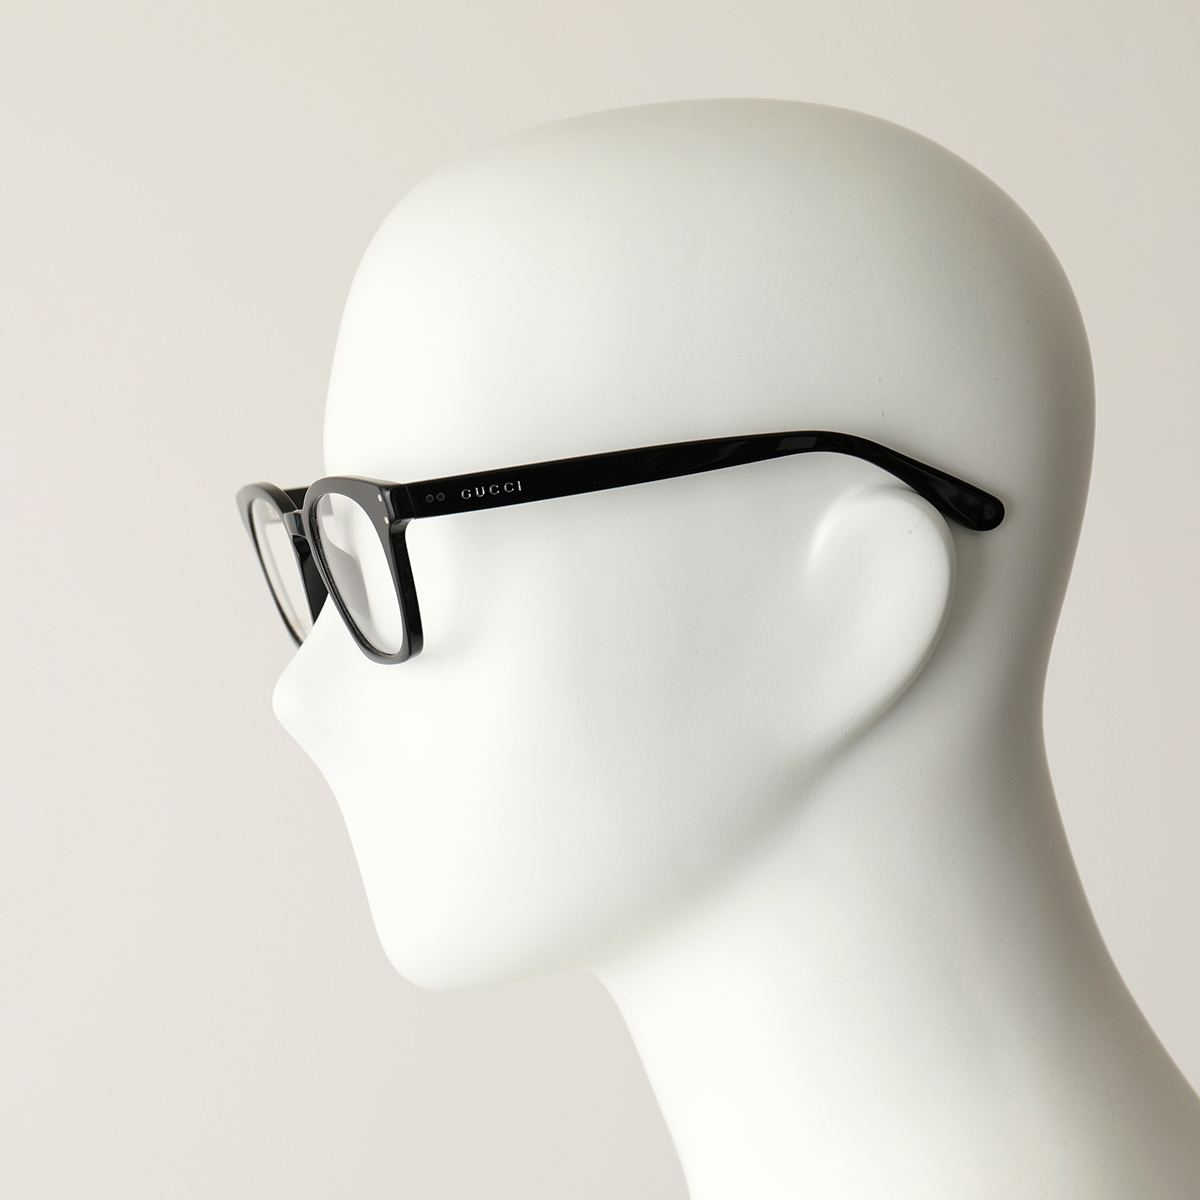 GUCCI グッチ GG0572O 眼鏡 フレーム 伊達メガネ メガネ OPTIC ウェリントン型 アイウェア めがね 黒縁メガネ  001/BLACK-TRANSPARENT メンズ レディース | インポートセレクト musee